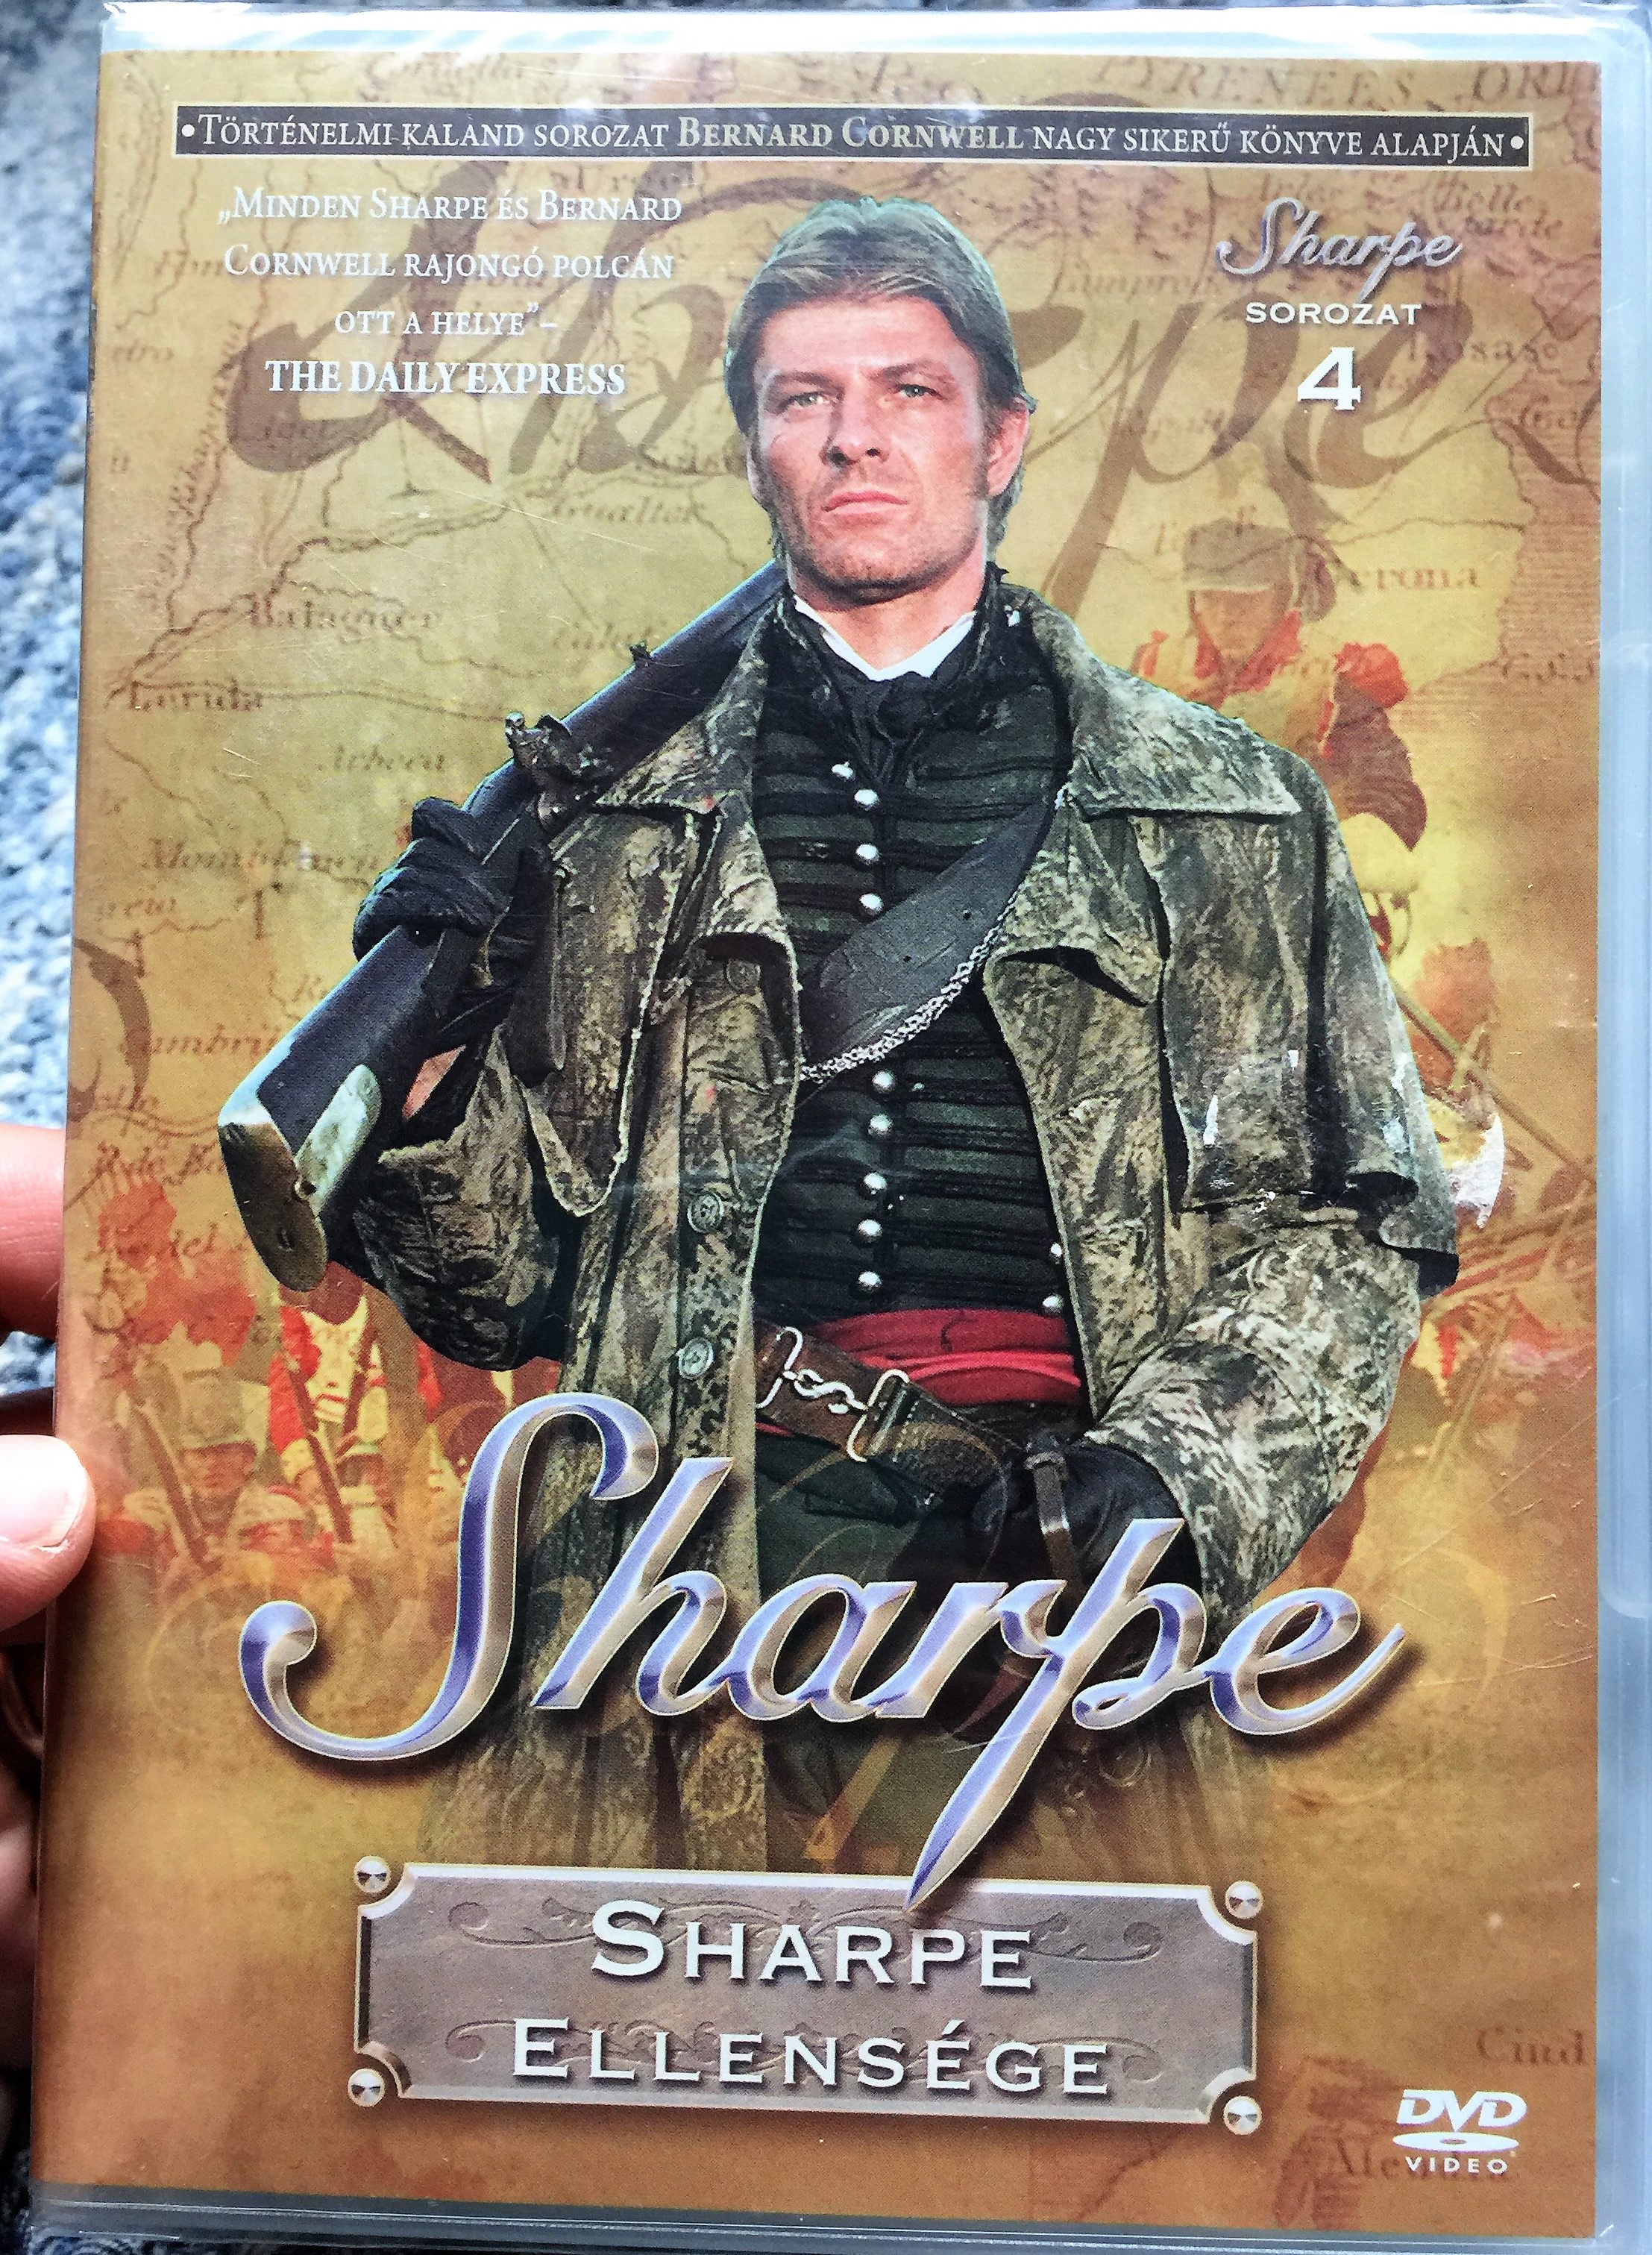 Sharpe Series 4. Sharpe's Enemy DVD 1994 Sharpe Sorozat 4 1